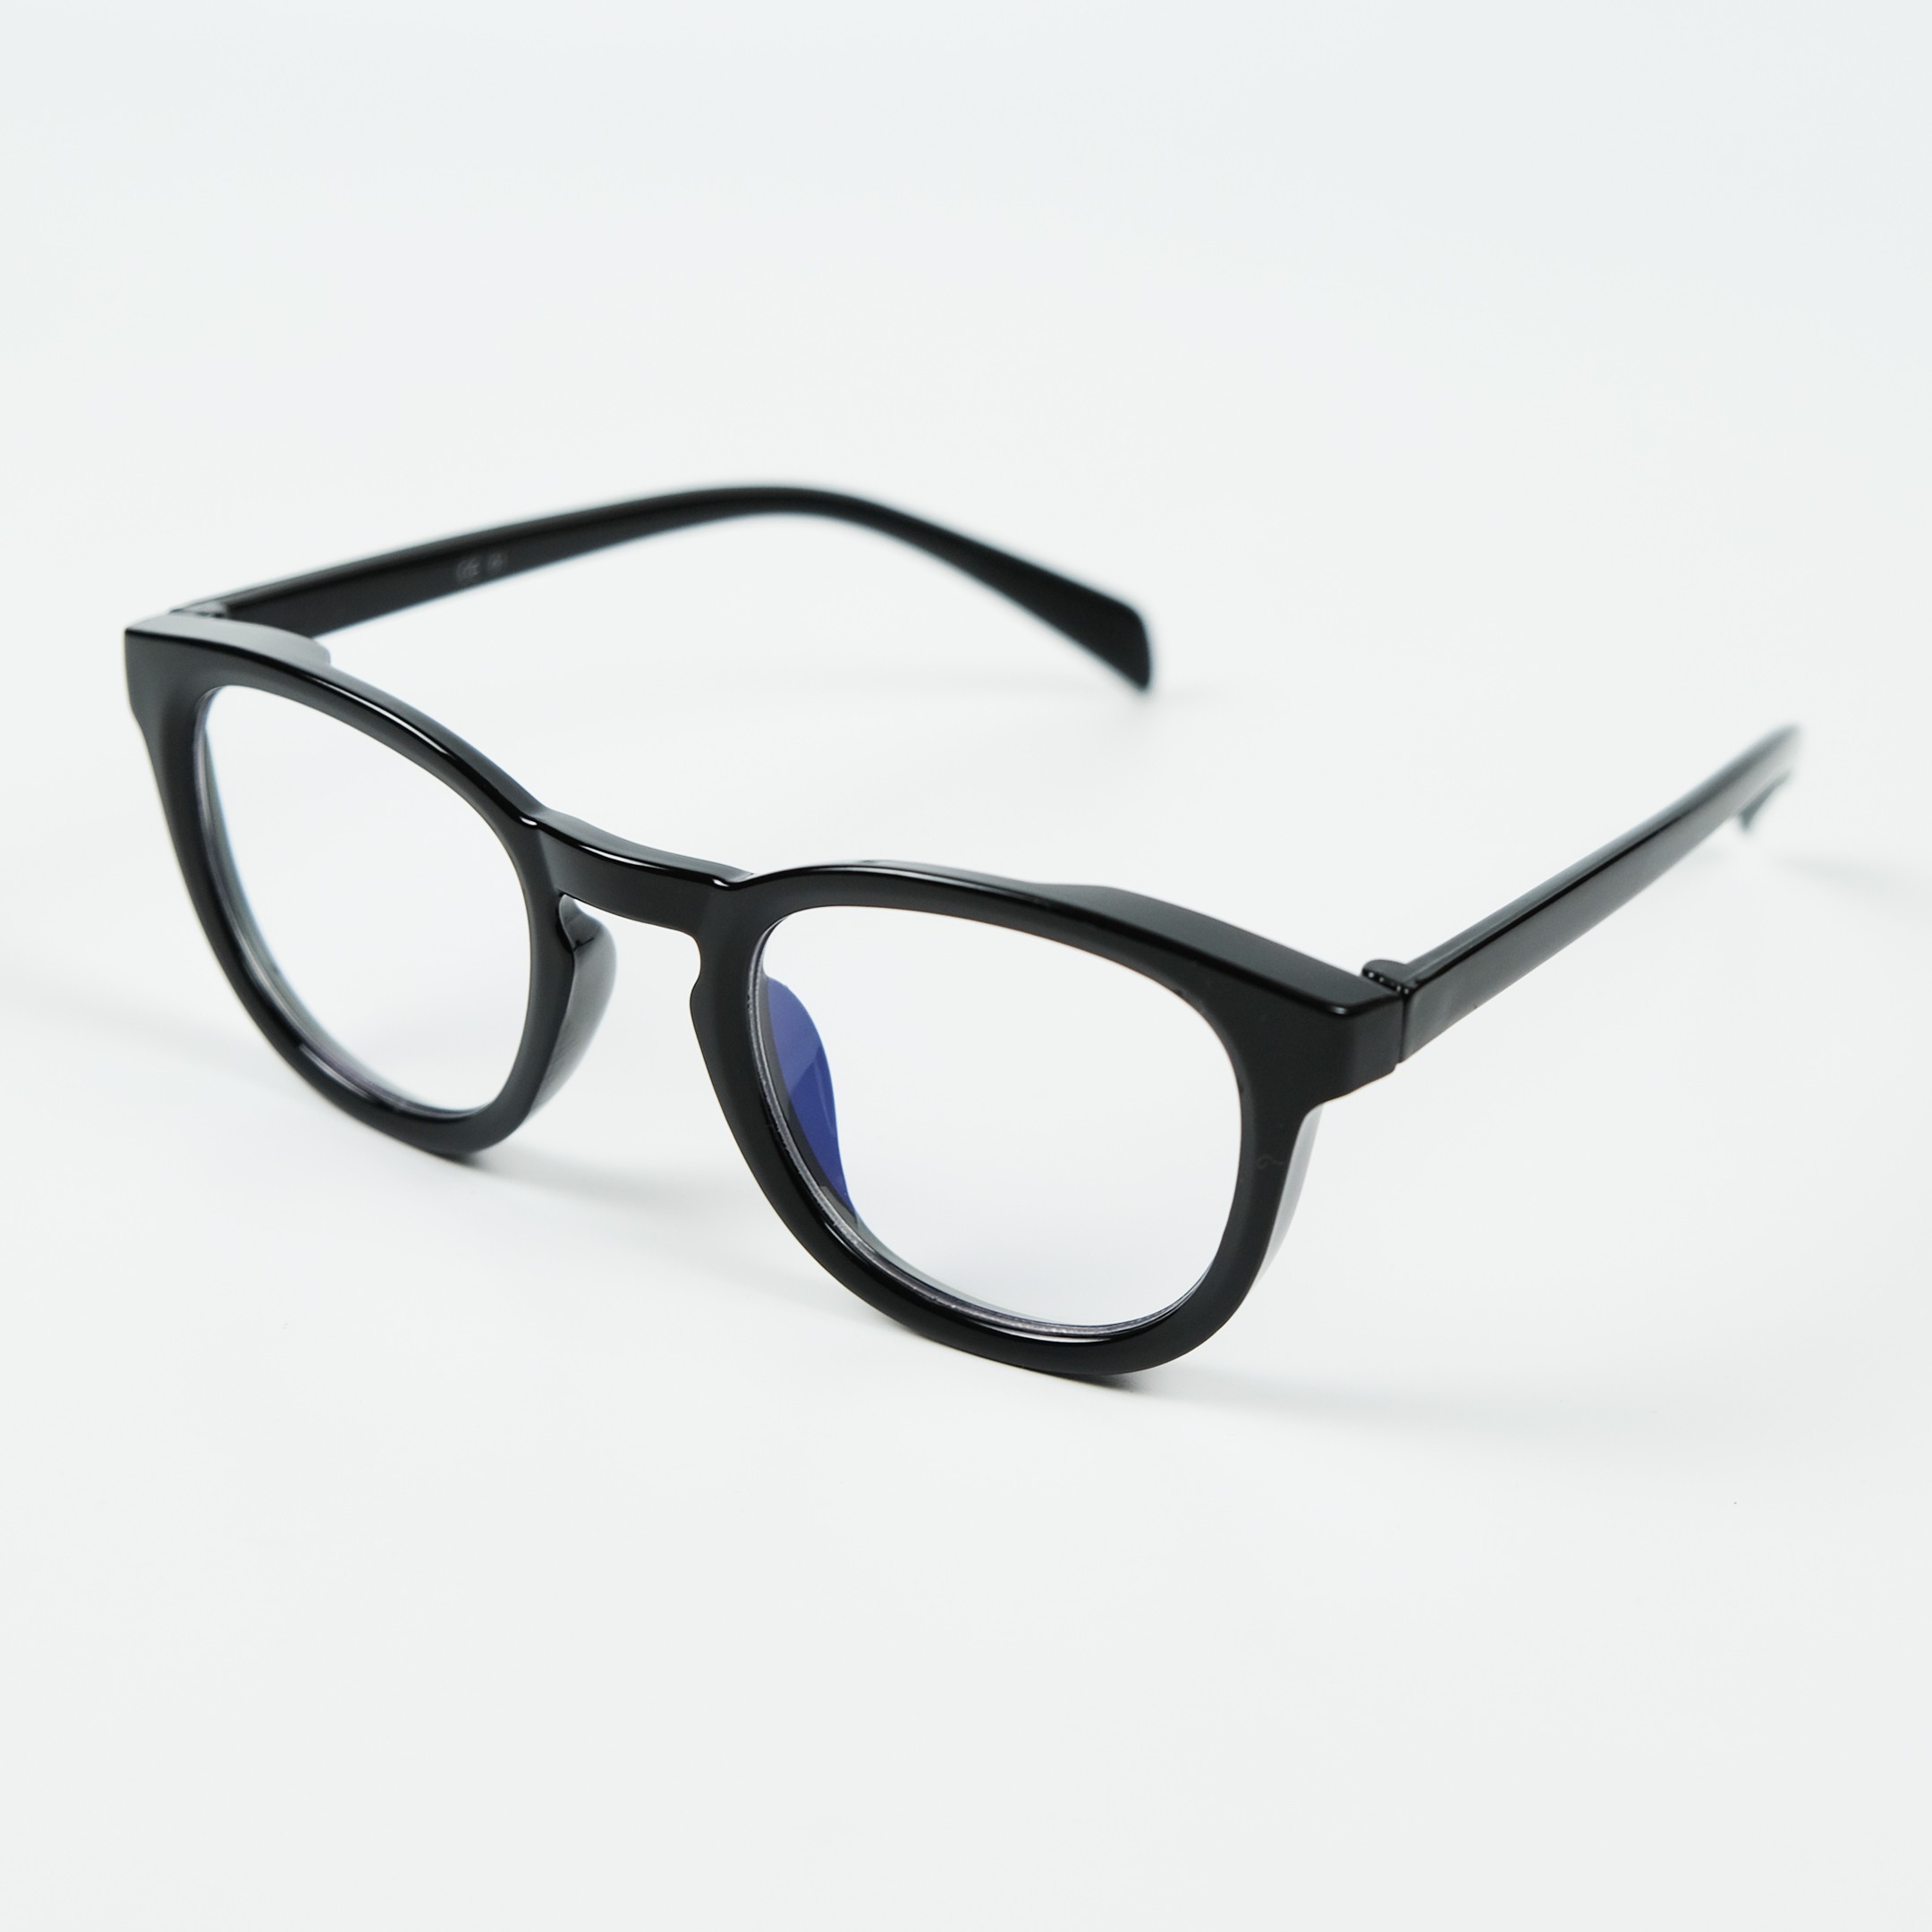 Naro Unisex Mavi Işık Koruma Gözlüğü - Siyah